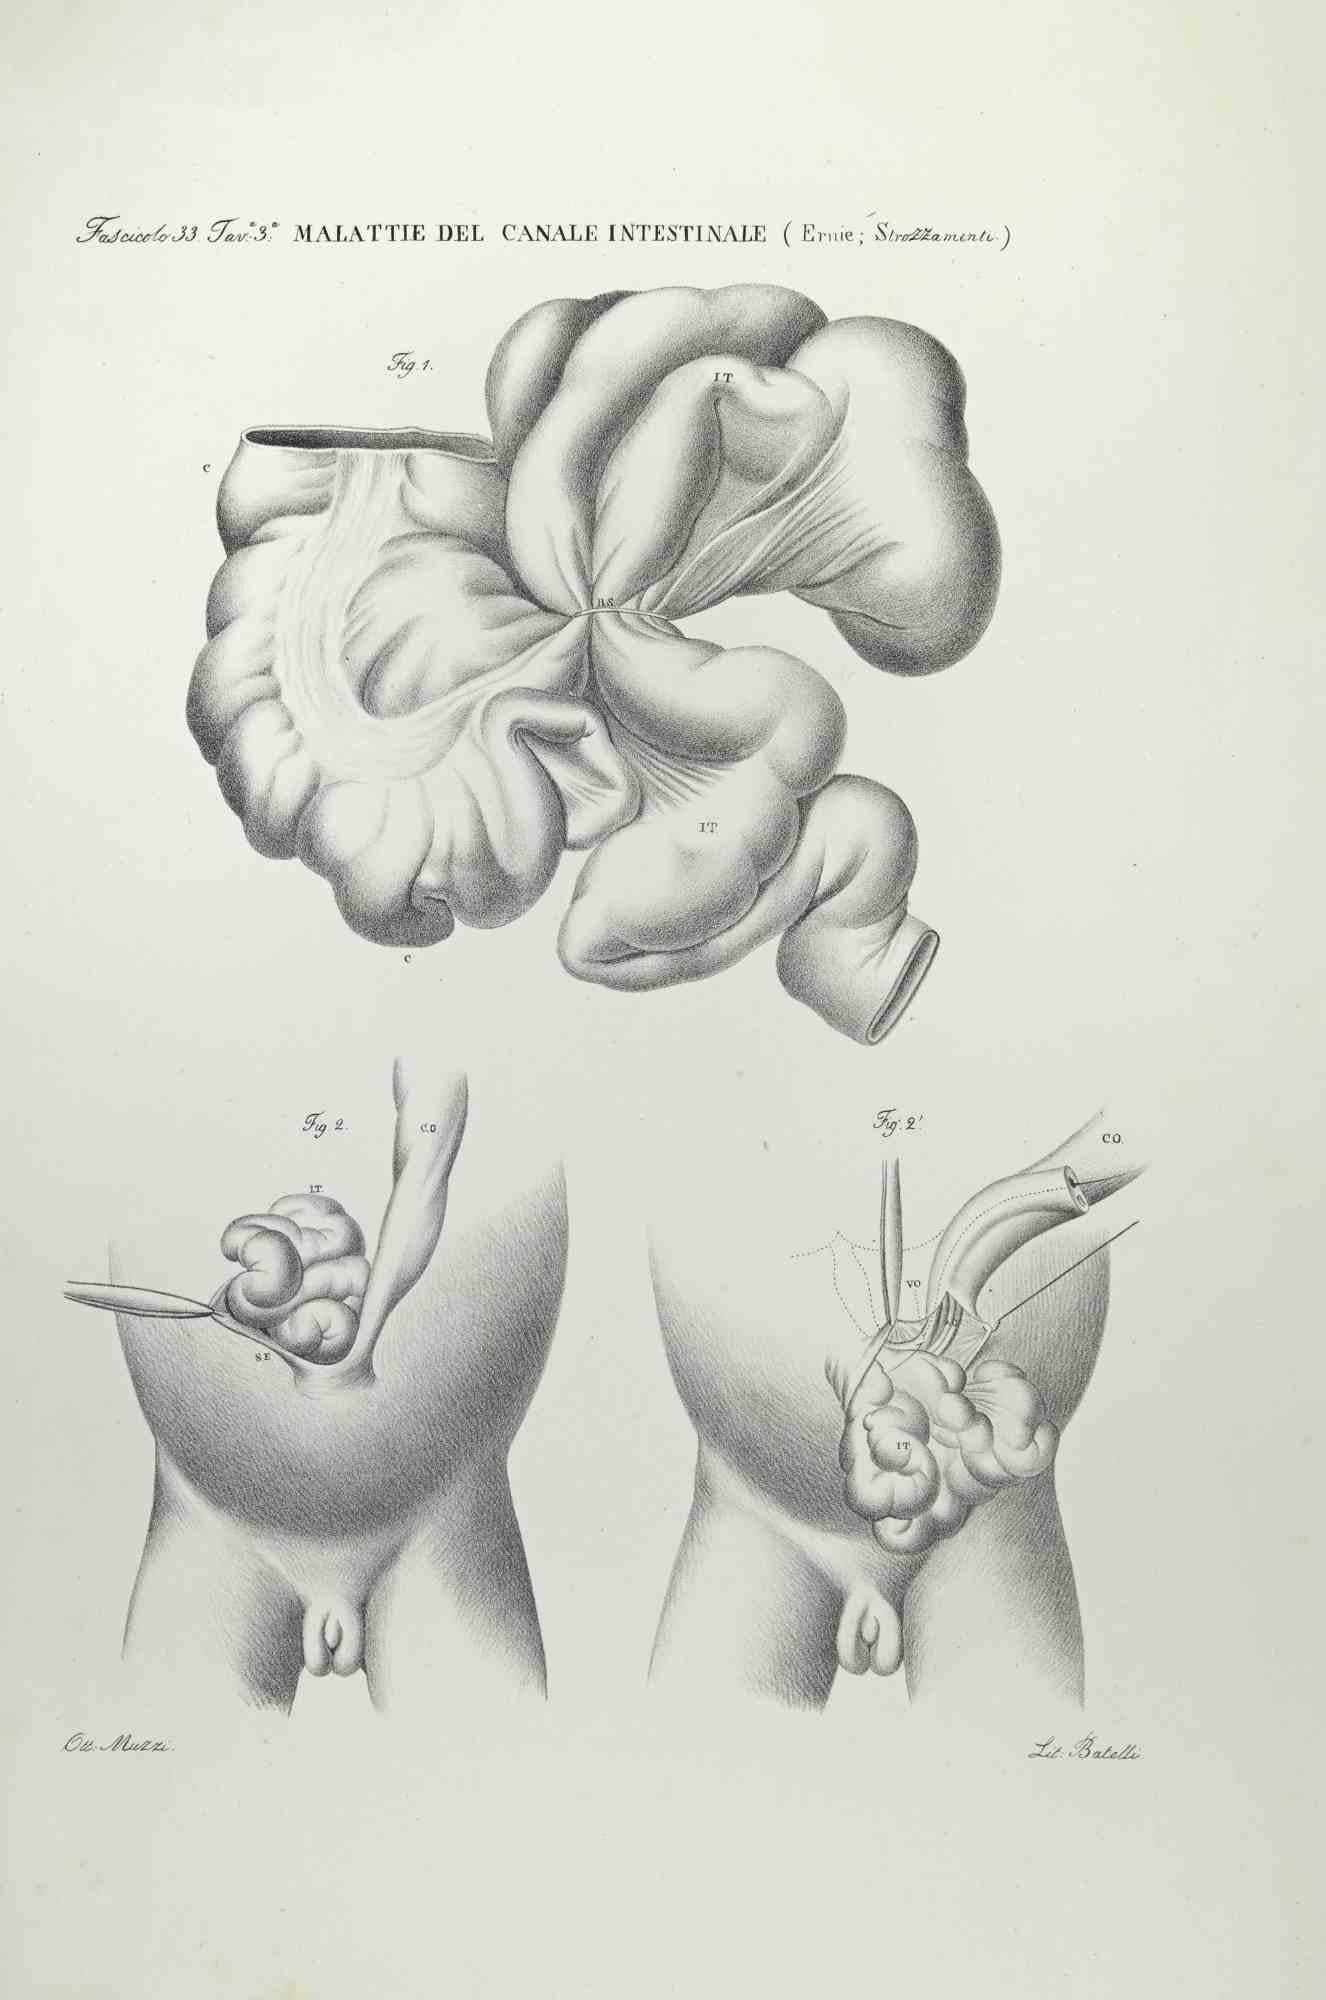 Diseases of the Intestines ist eine handkolorierte Lithographie von Ottavio Muzzi für die Ausgabe von Antoine Chazal, Human Anatomy, Druckerei Batelli und Ridolfi, aus dem Jahr 1843.

Signiert auf der Platte am unteren linken Rand.


